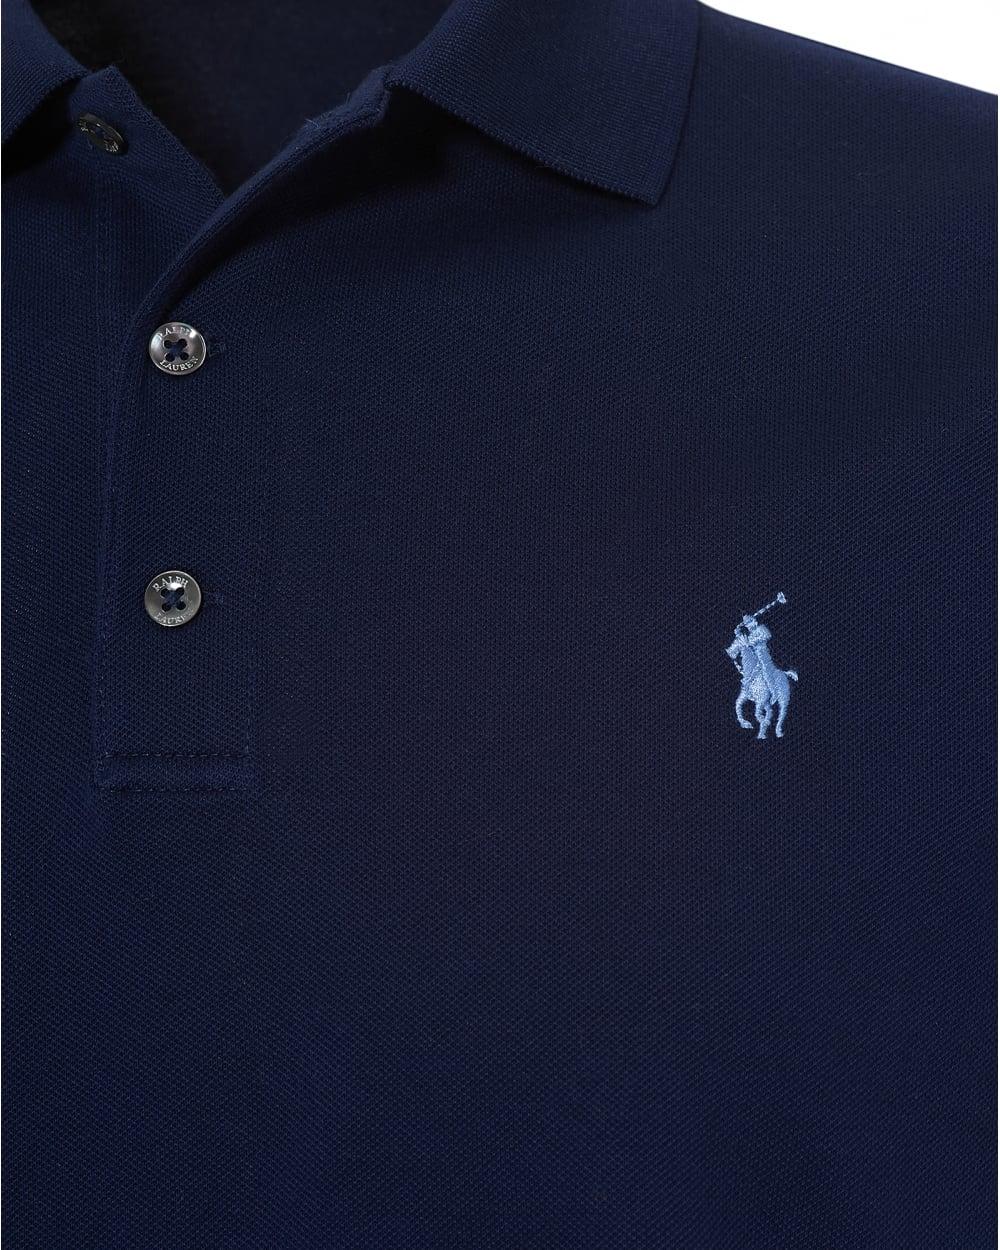 Blue Polo Logo - Ralph Lauren Mens Mesh Polo Shirt, Embroidered Logo Navy Blue Polo